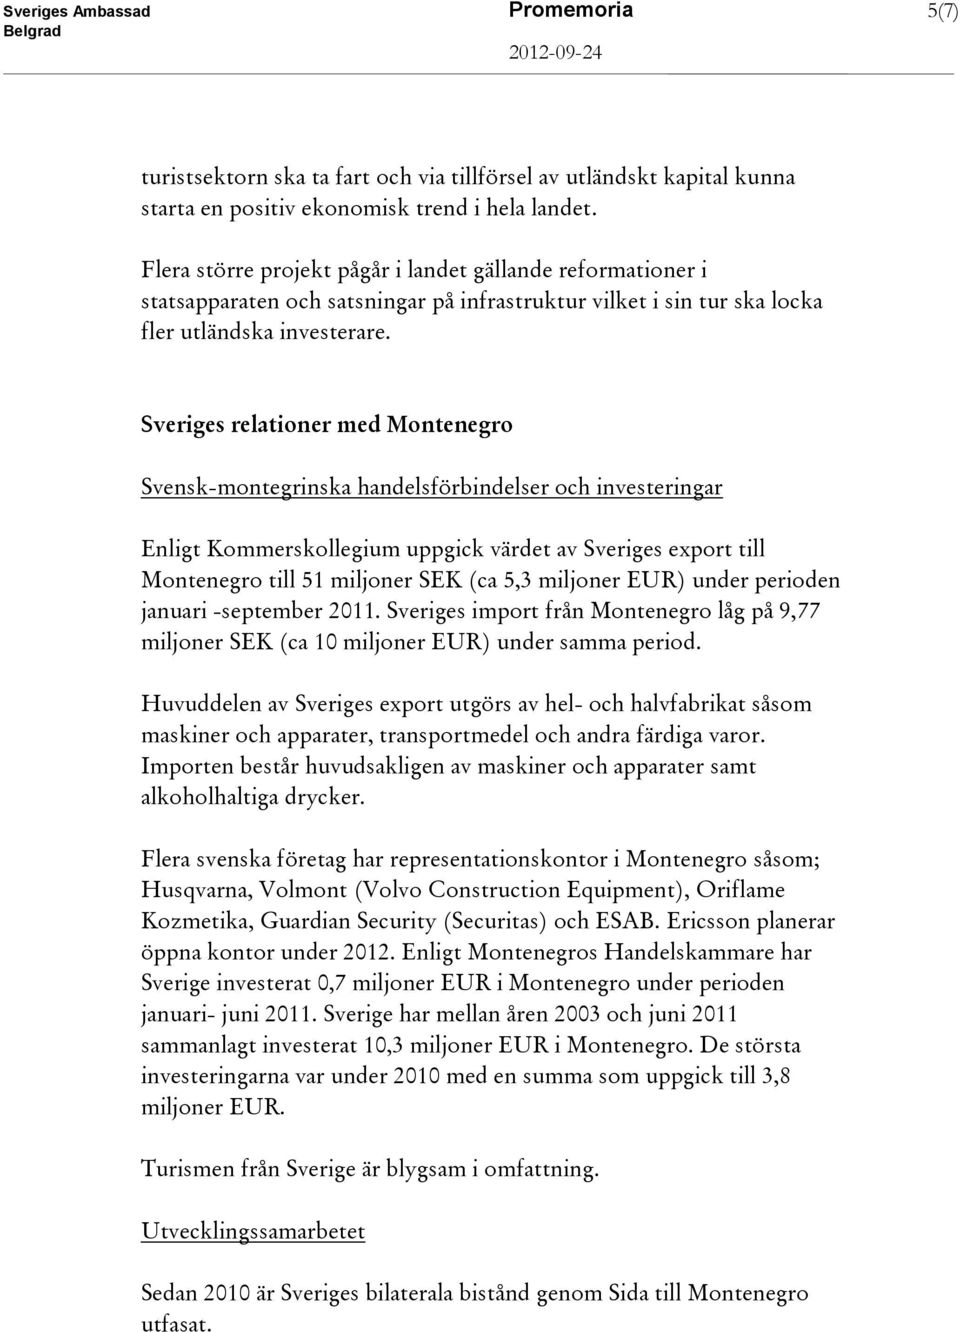 Sveriges relationer med Montenegro Svensk-montegrinska handelsförbindelser och investeringar Enligt Kommerskollegium uppgick värdet av Sveriges export till Montenegro till 51 miljoner SEK (ca 5,3